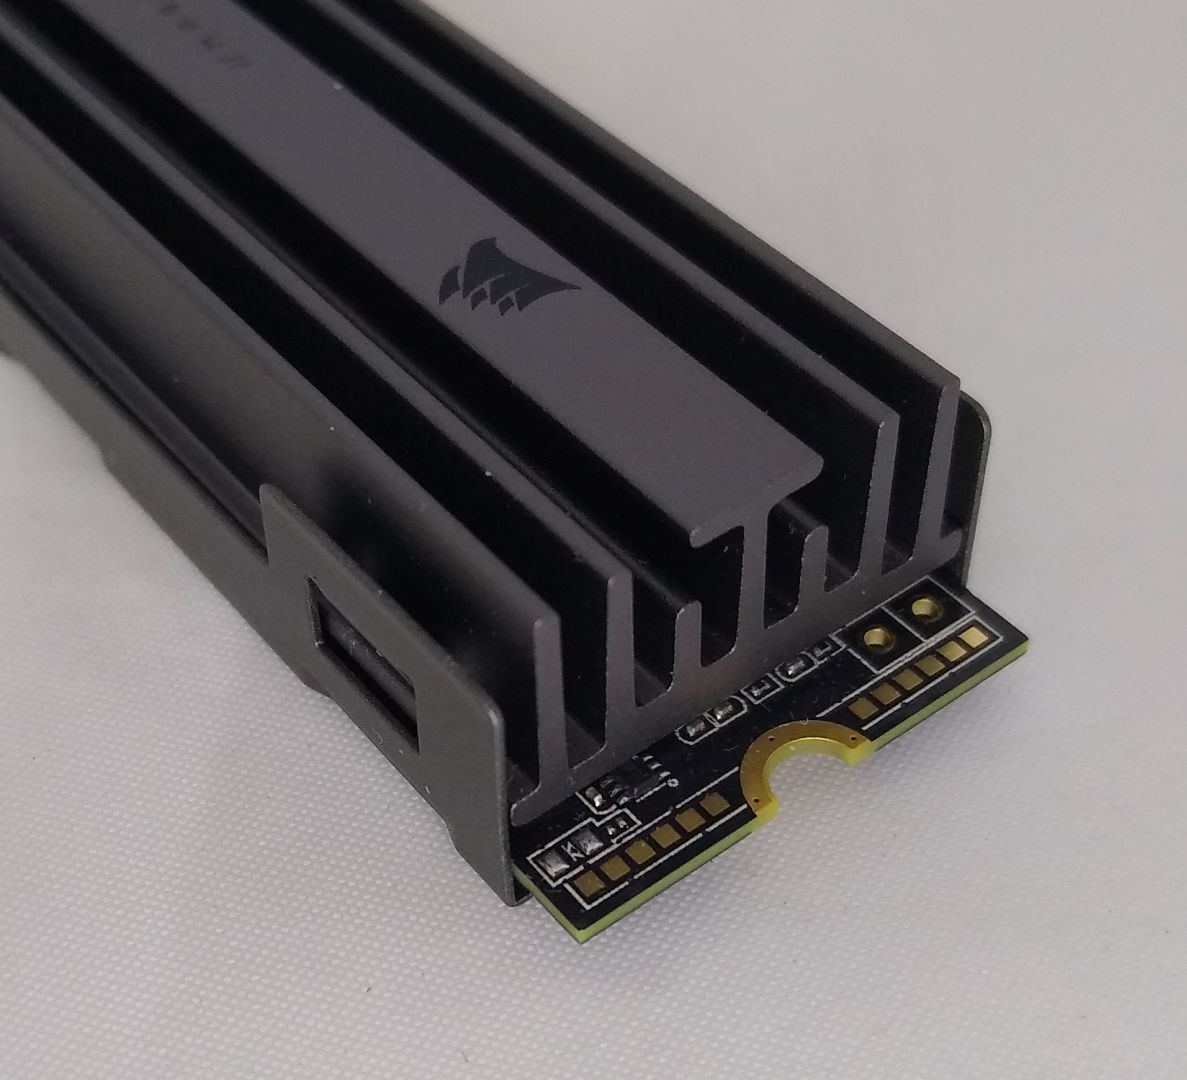 Corsair MP600 CORE 1TB NVMe PCIe Gen 4x4 SSD